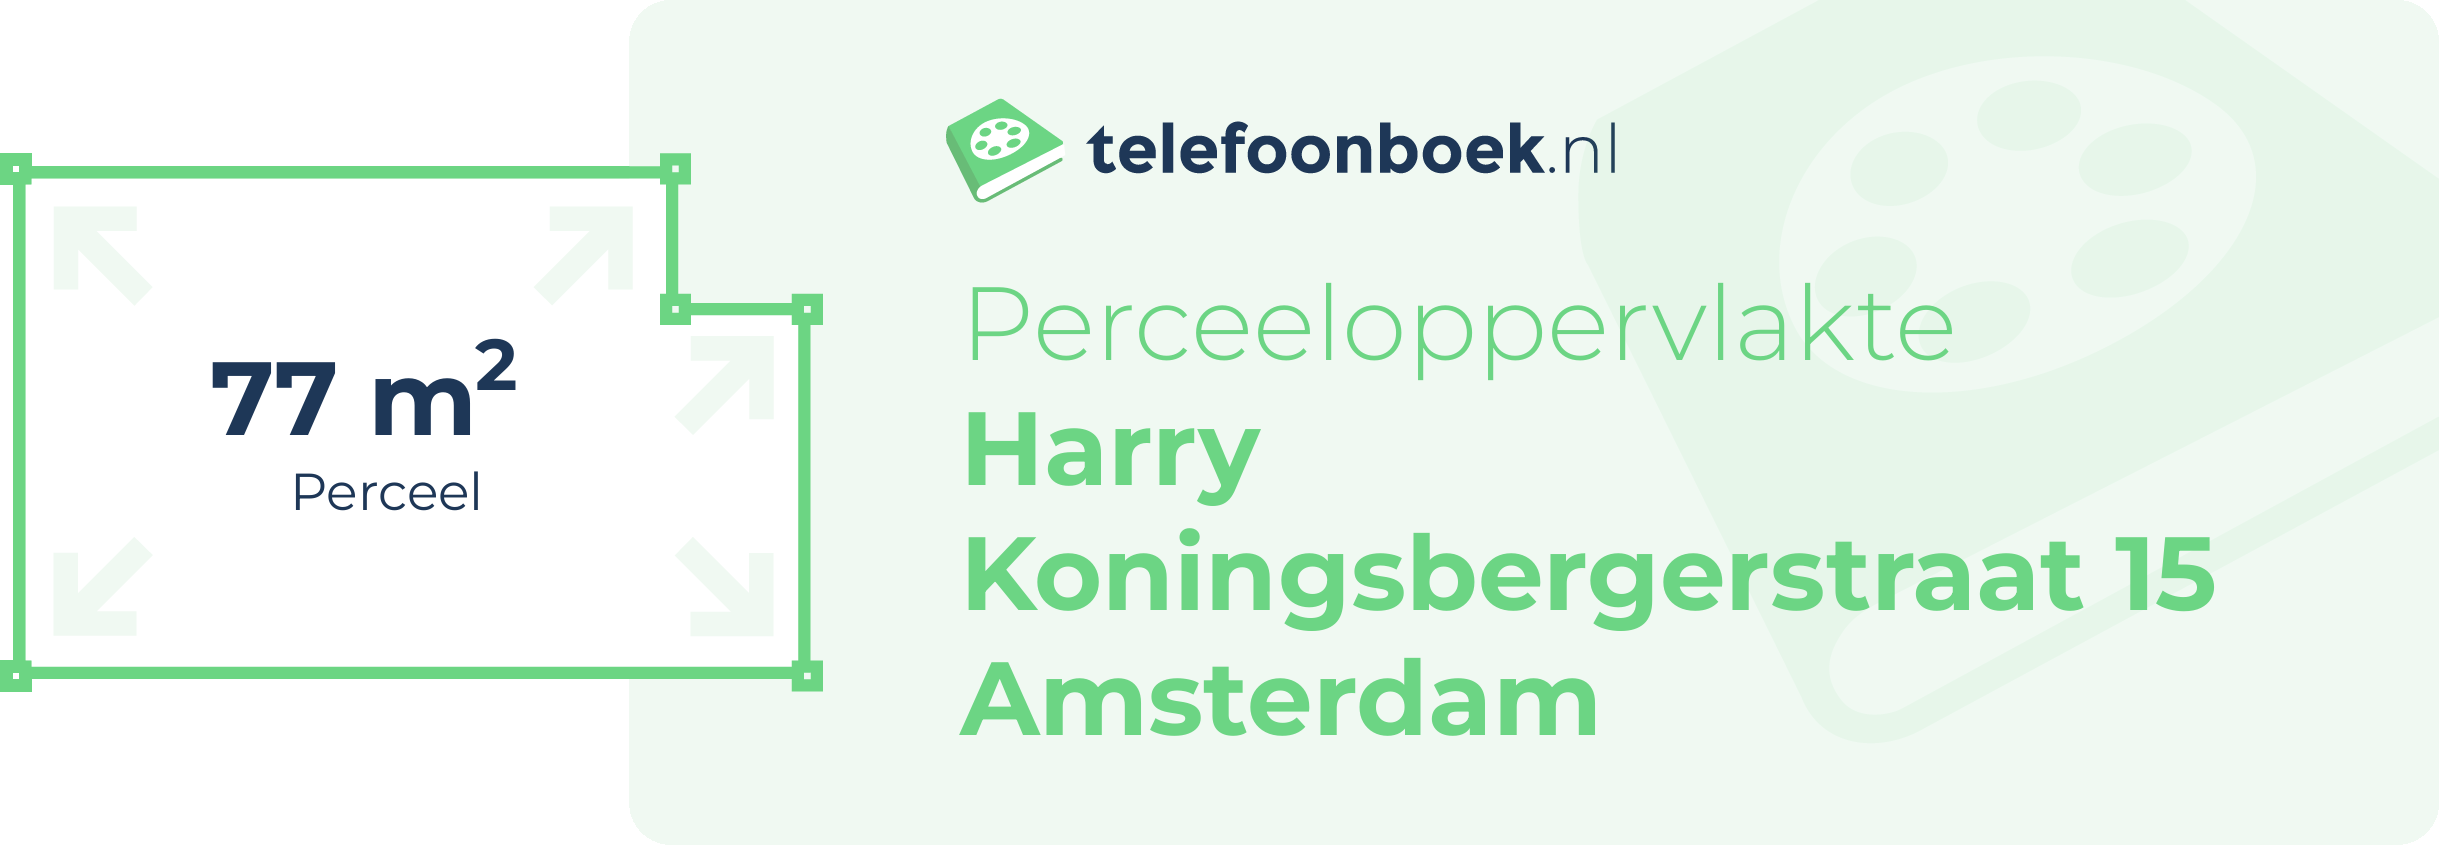 Perceeloppervlakte Harry Koningsbergerstraat 15 Amsterdam